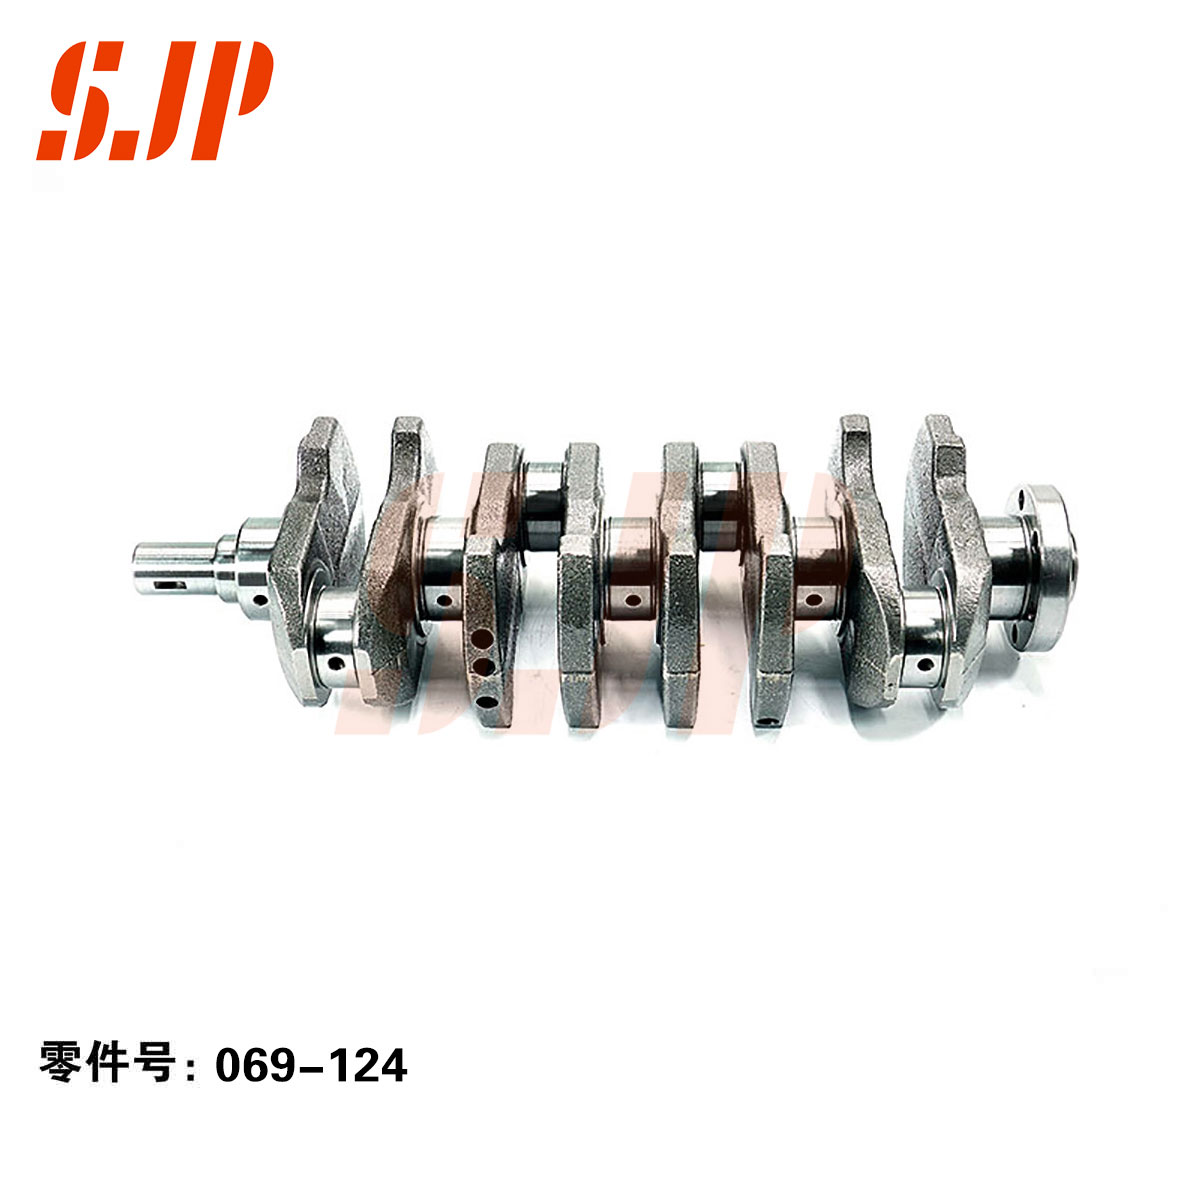 SJ-069-124 Crankshaft For 4A15